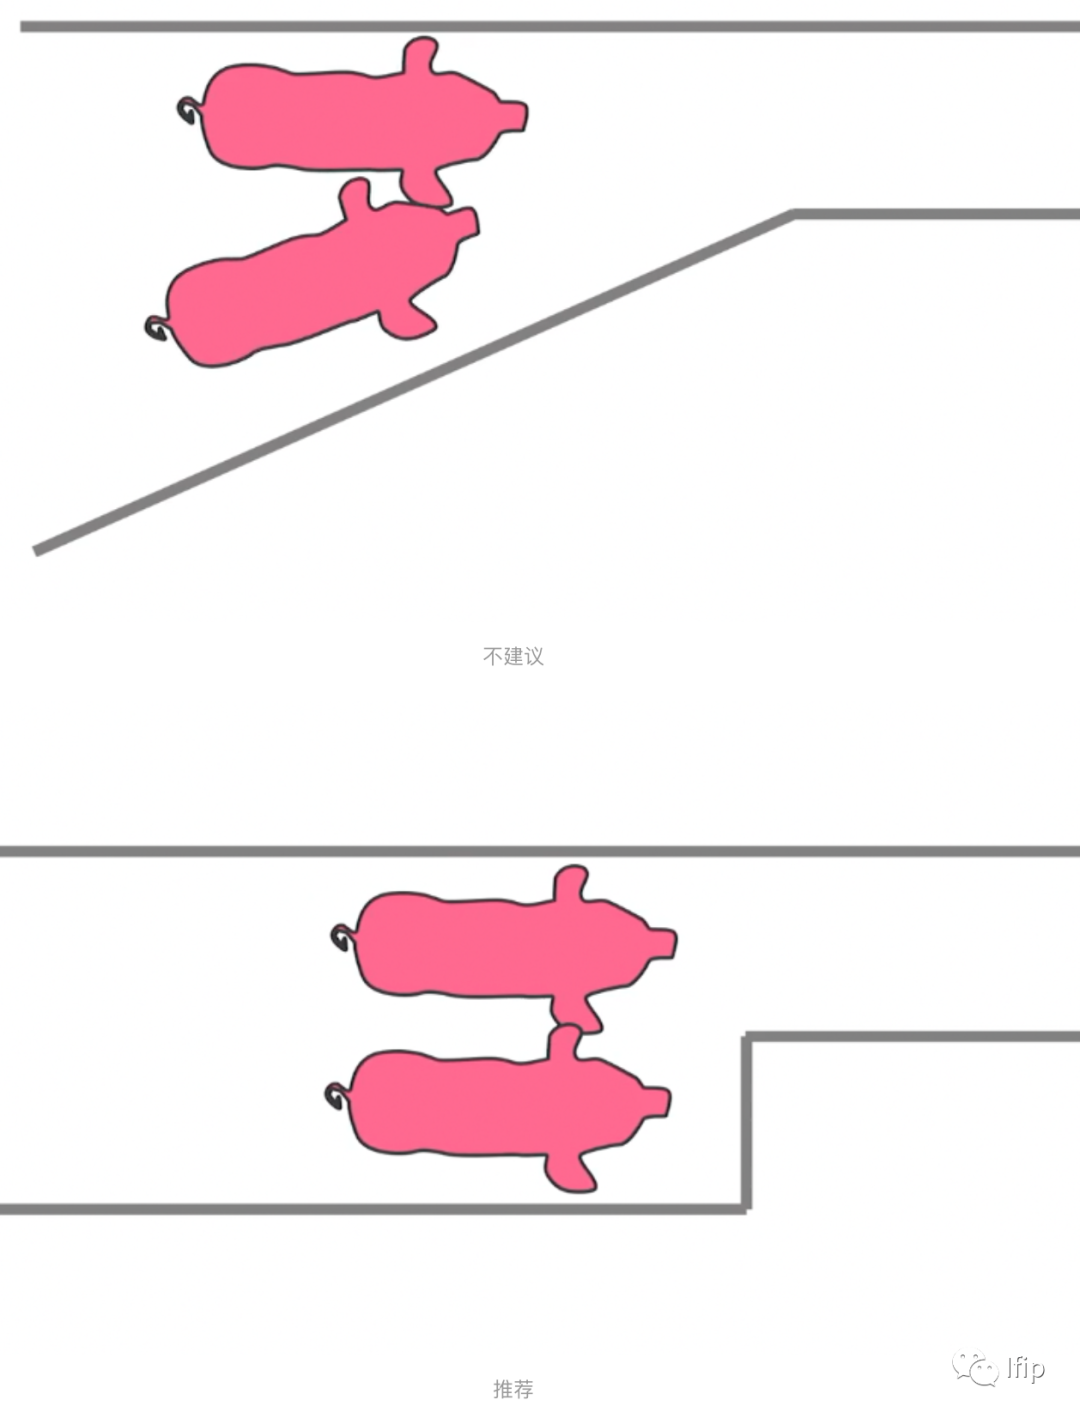 猪的走道设计